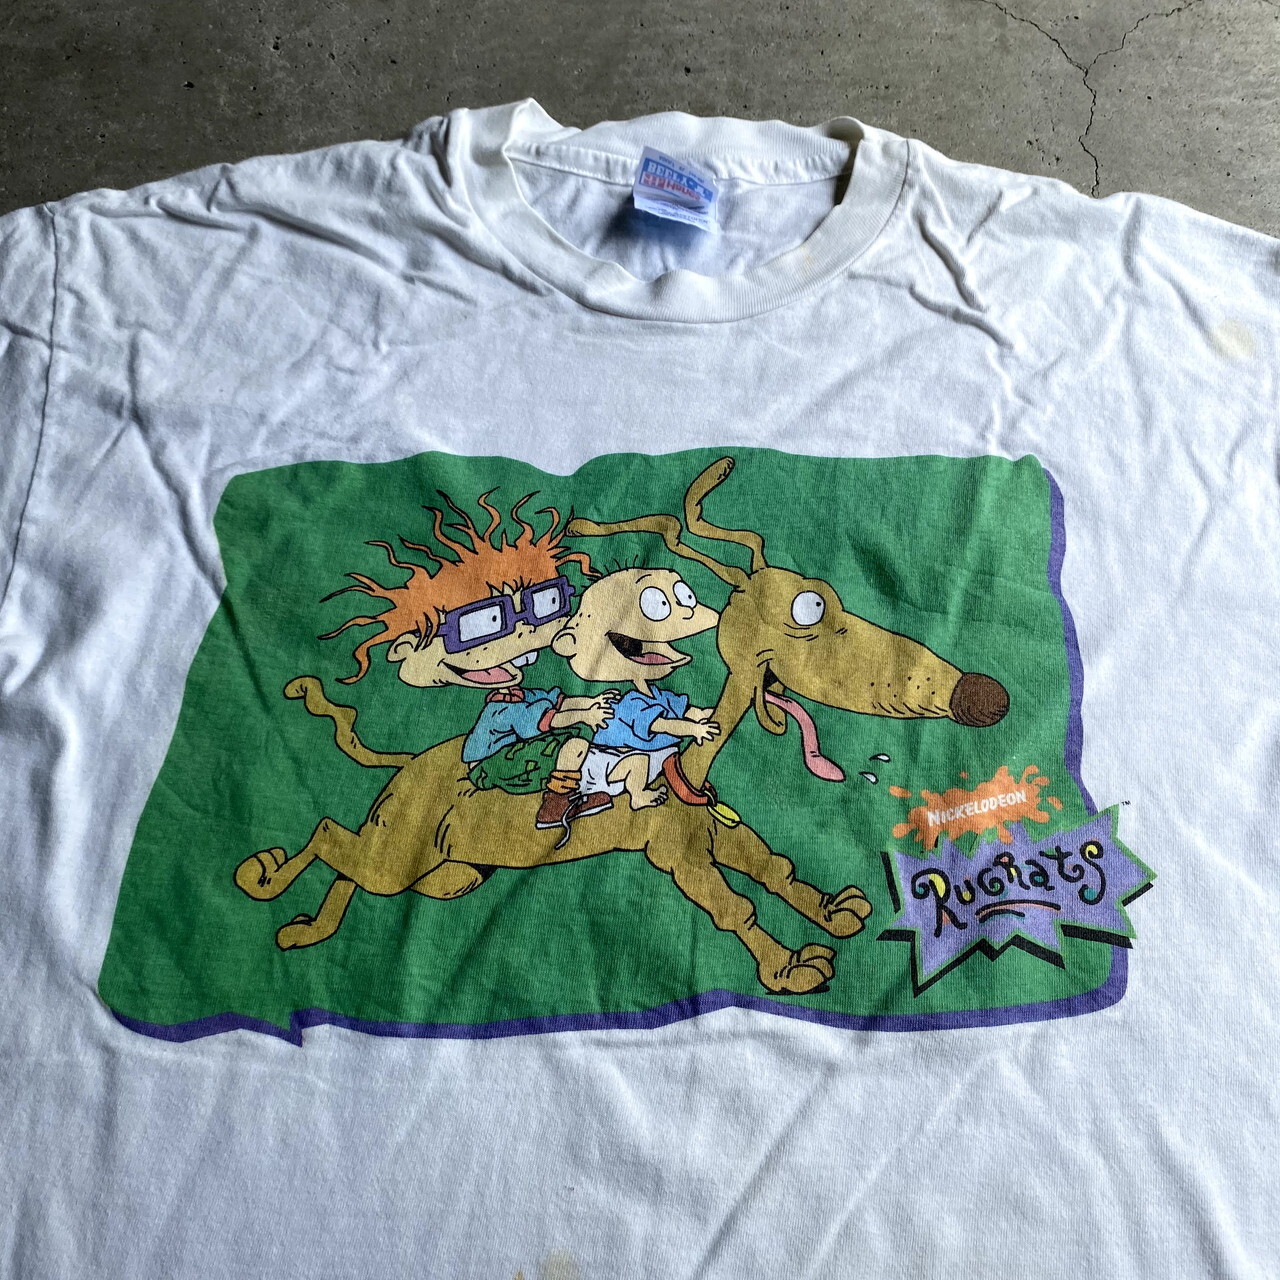 90年代 Usa製 Nickelodeon Rugrats キャラクタープリントtシャツ メンズxl レディース 古着 ニコロデオン ラグラッツ アニメtシャツ 90s ビンテージ ヴィンテージ シングルステッチ ホワイト 白 Tシャツ Cave 古着屋 公式 古着通販サイト